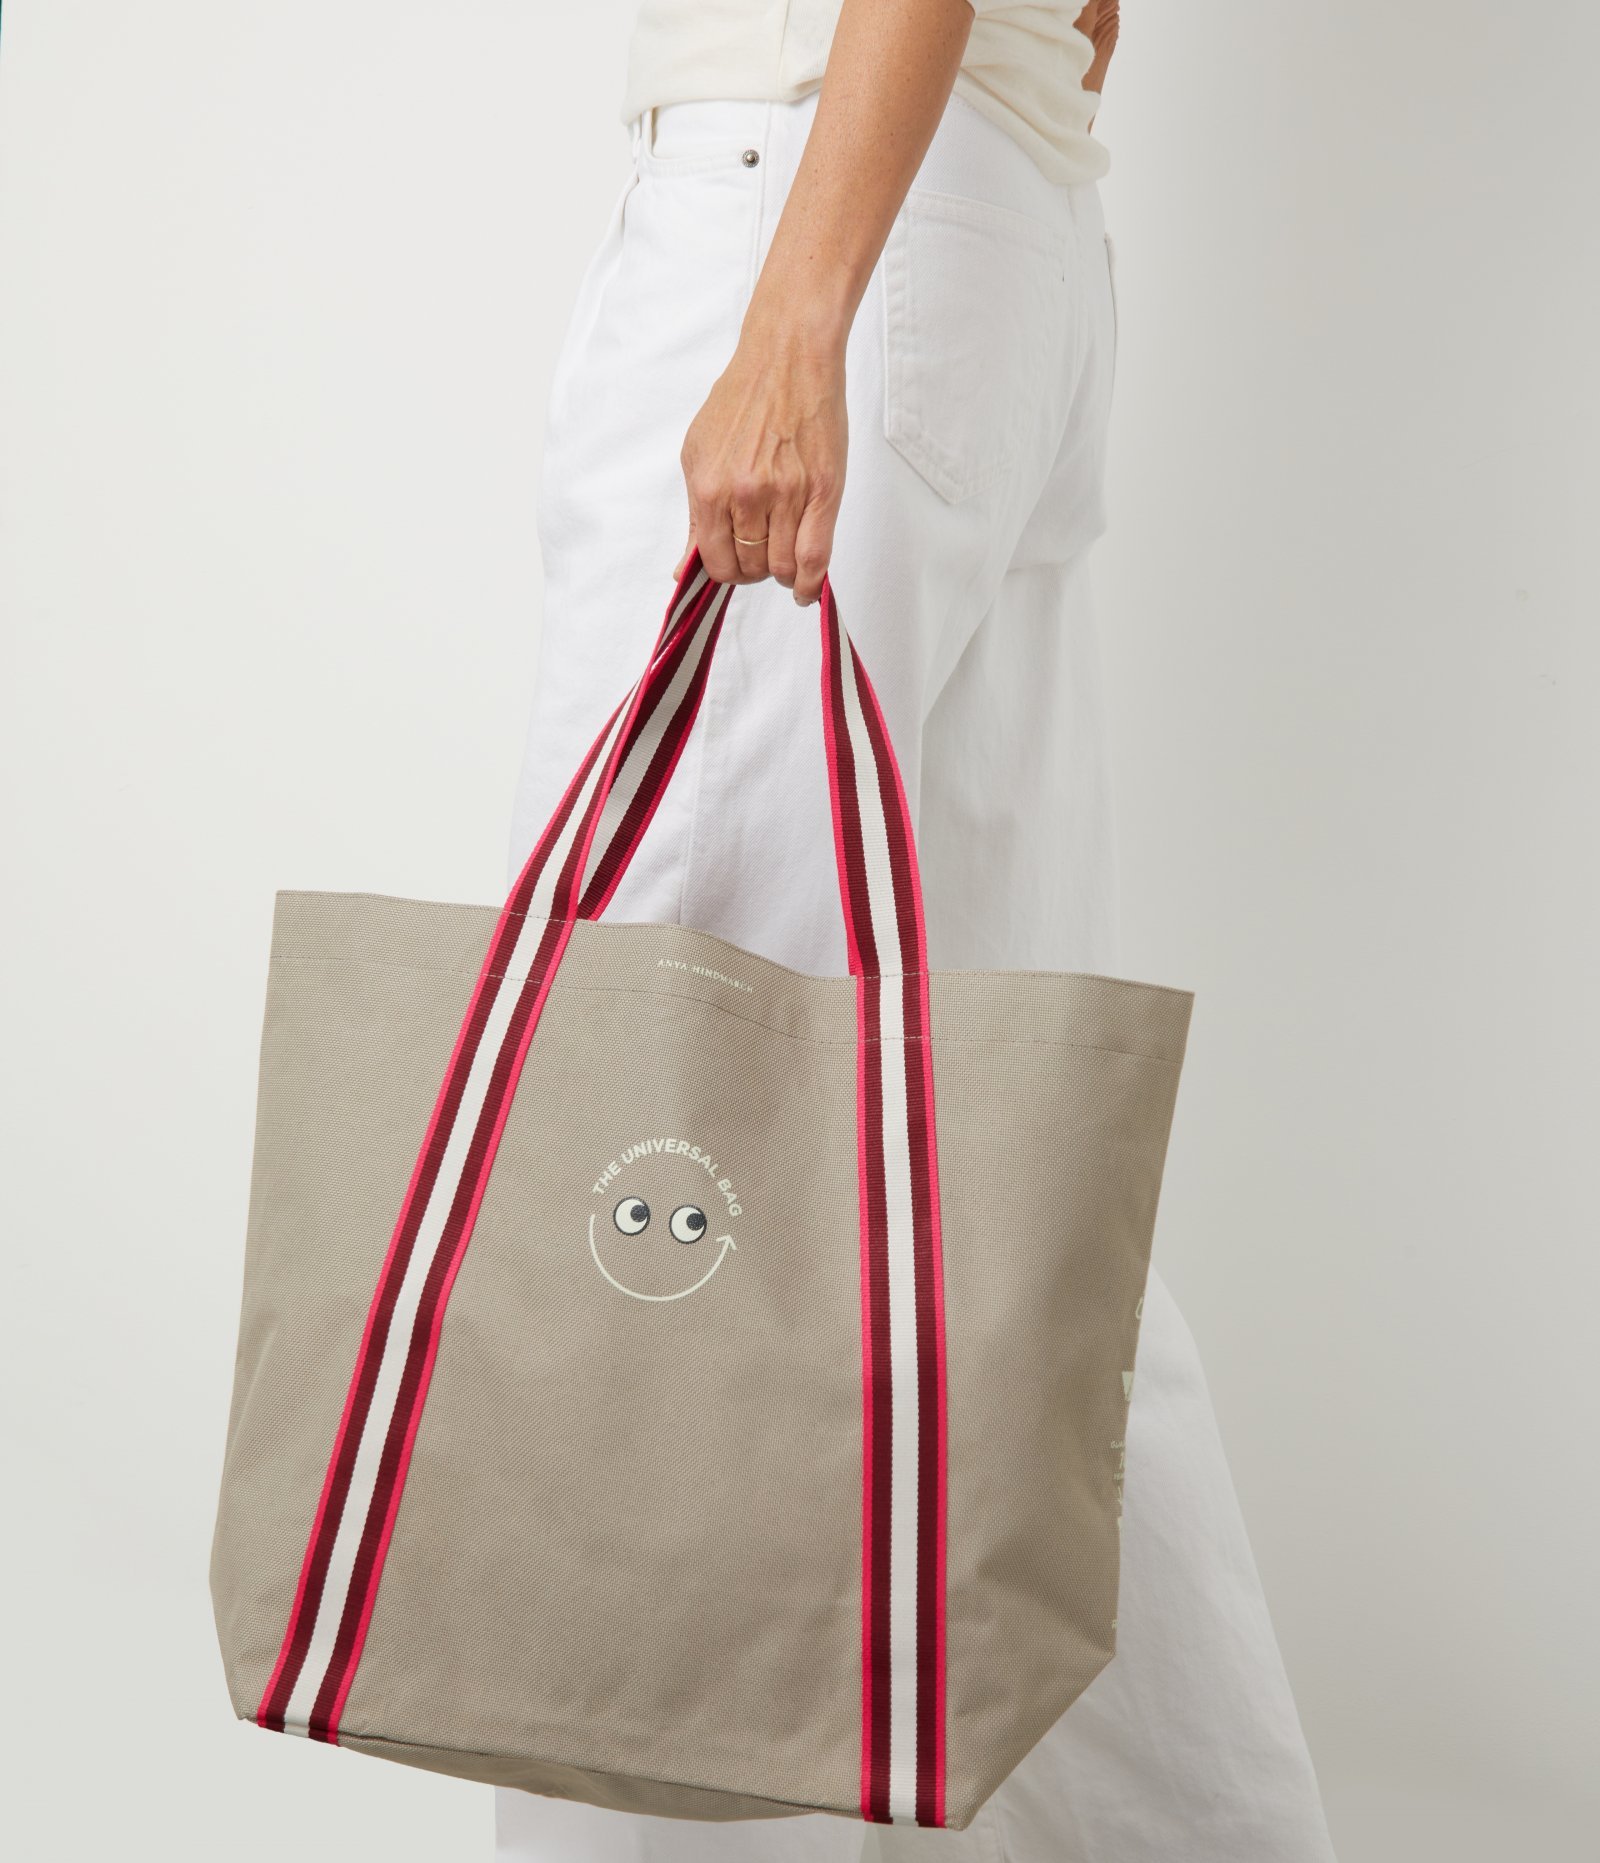 ナショナル麻布 アニヤ・ハインドマーチコラボバッグ「Universal Bag